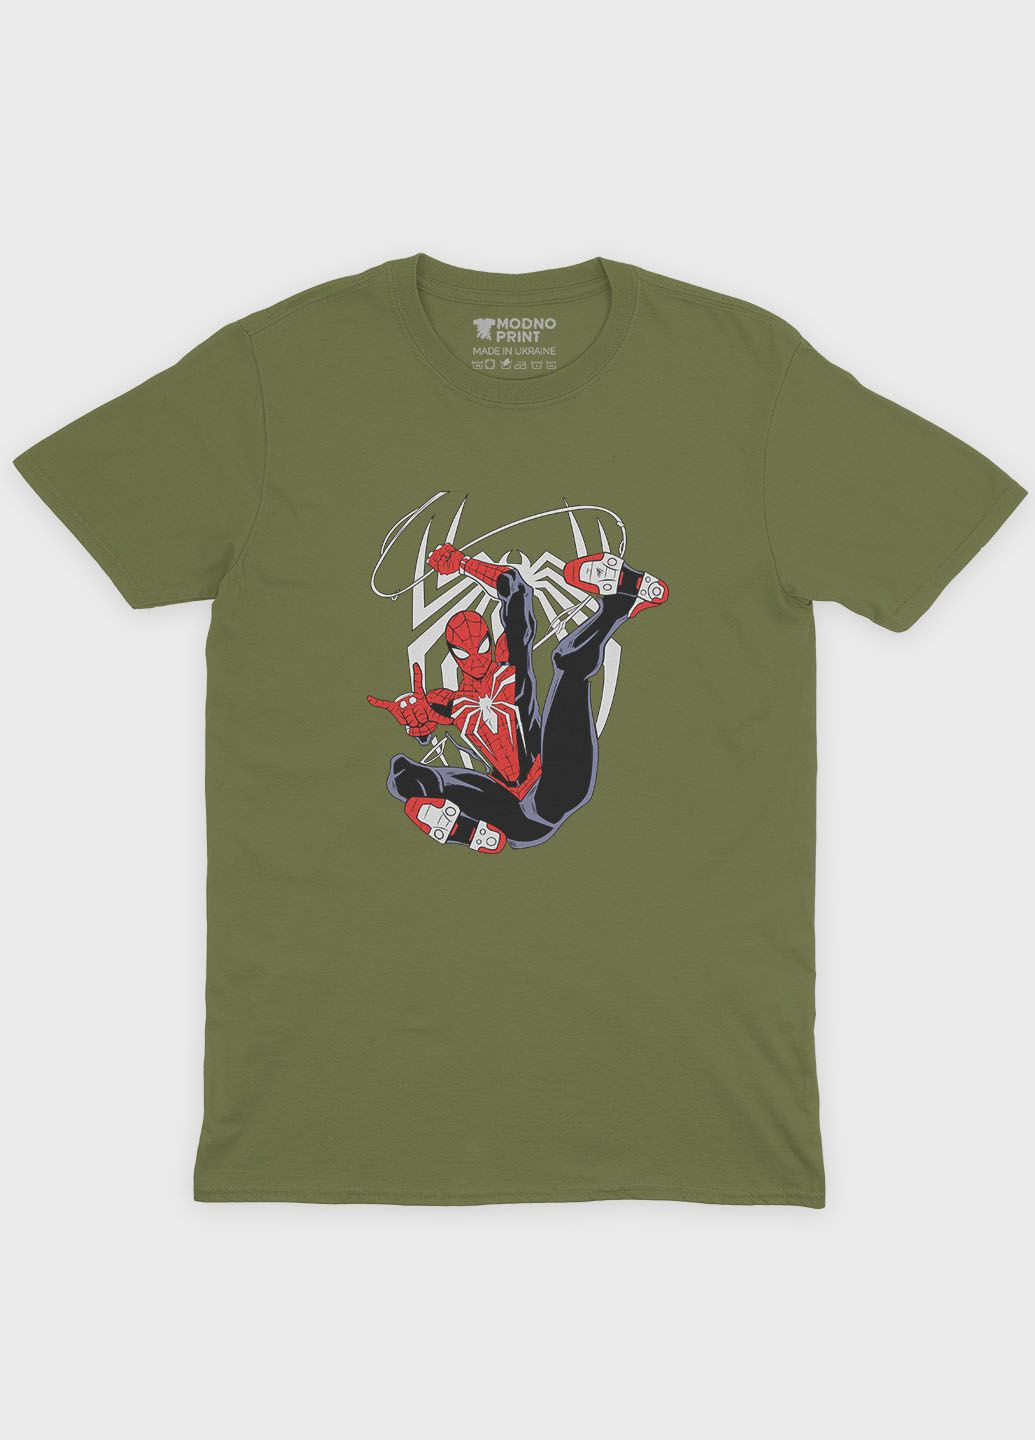 Хаки (оливковая) летняя мужская футболка с принтом супергероя - человек-паук (ts001-1-hgr-006-014-025-f) Modno